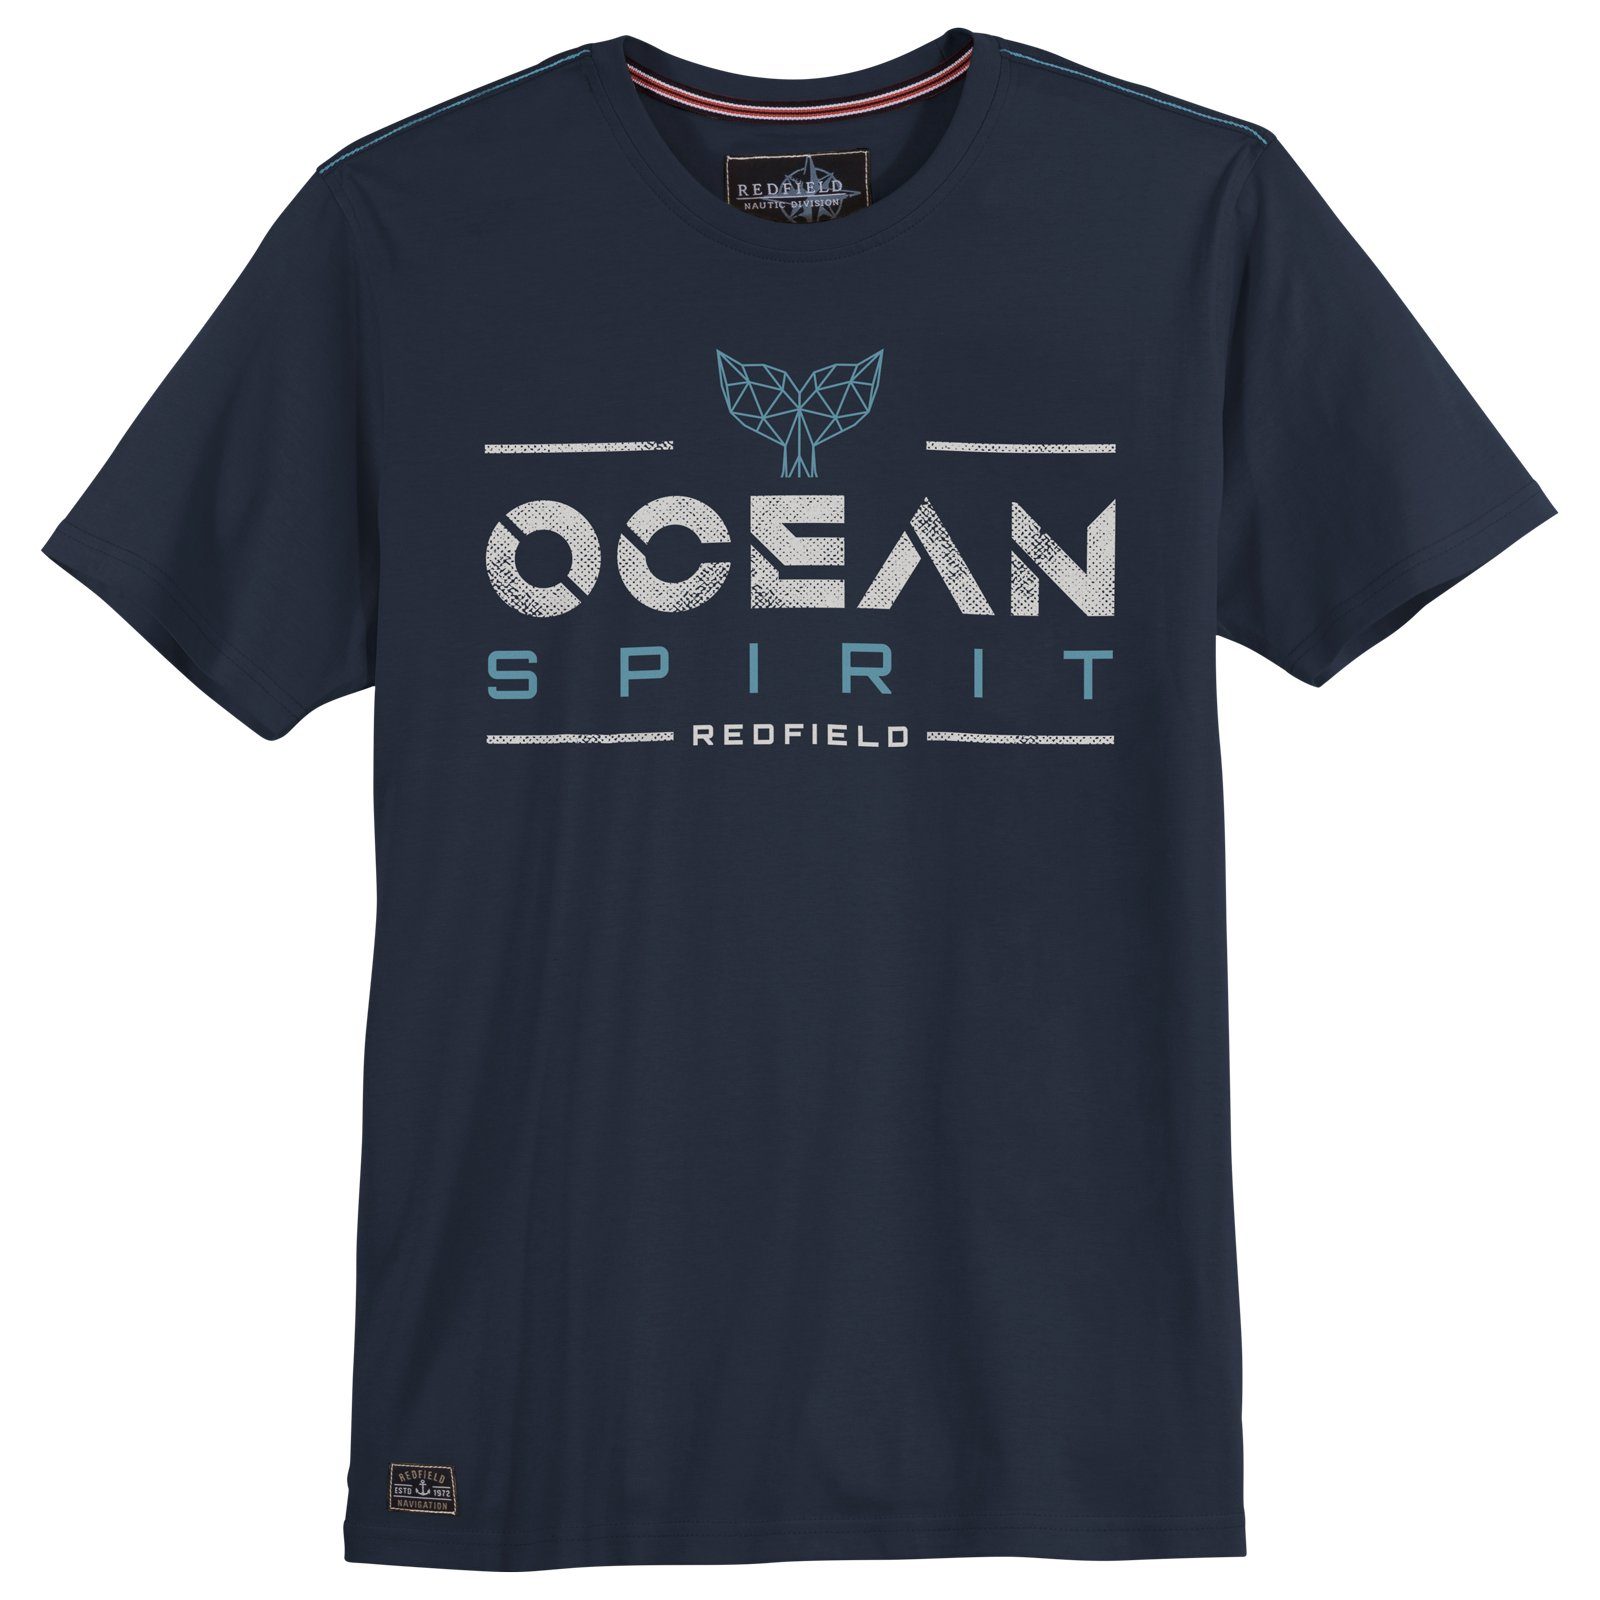 redfield Rundhalsshirt Große Größen Herren navy T-Shirt Ocean Print Spirit Redfield